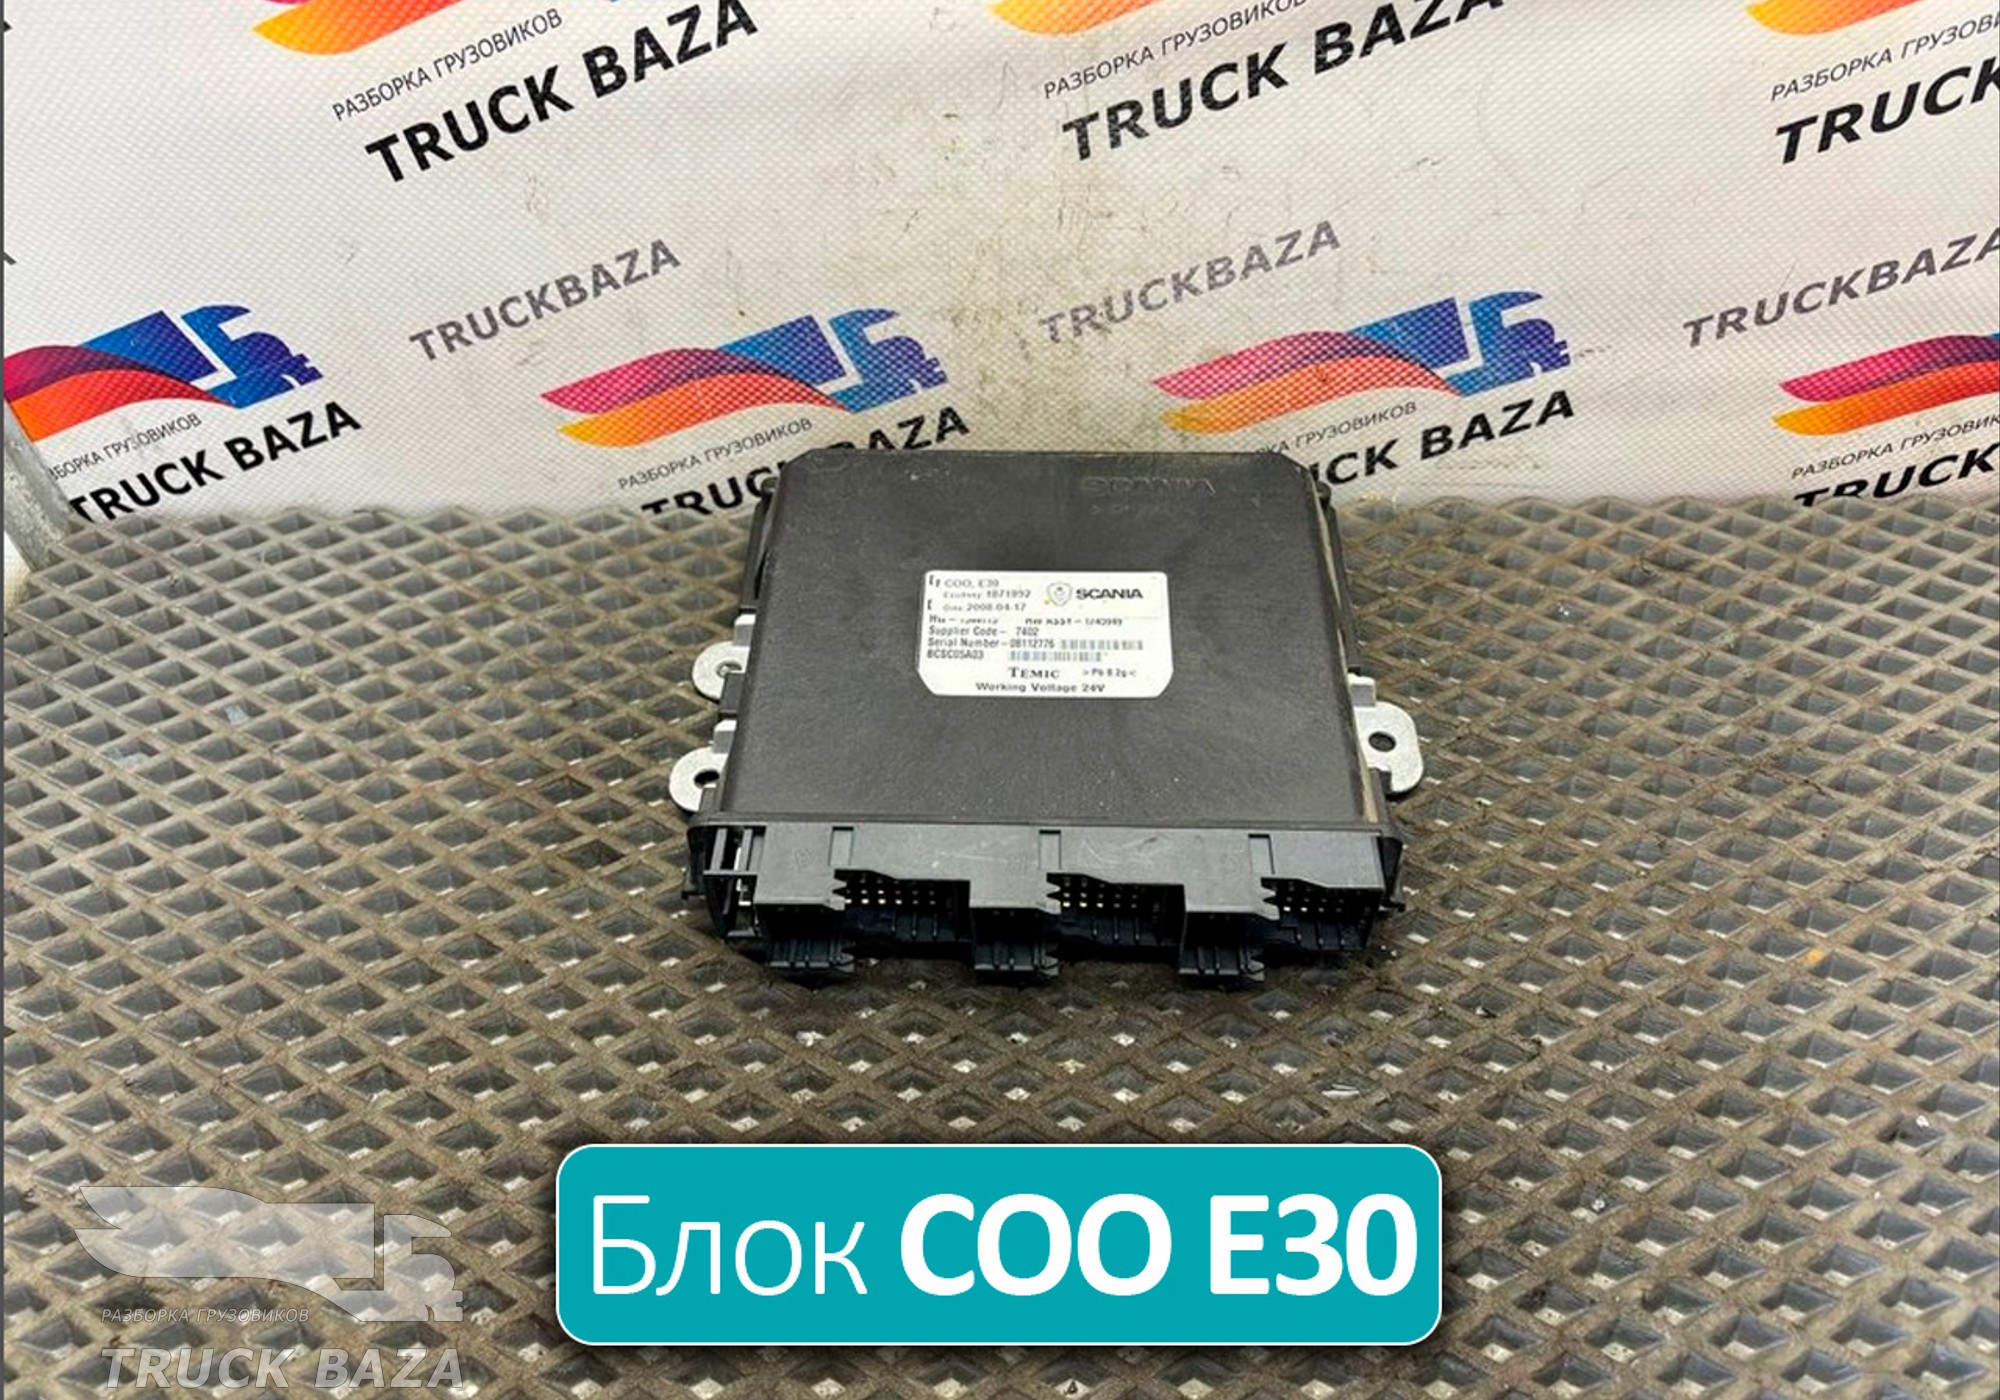 1871892 Блок управления COO Е30 для Scania 5-series T (с 2004 по 2016)